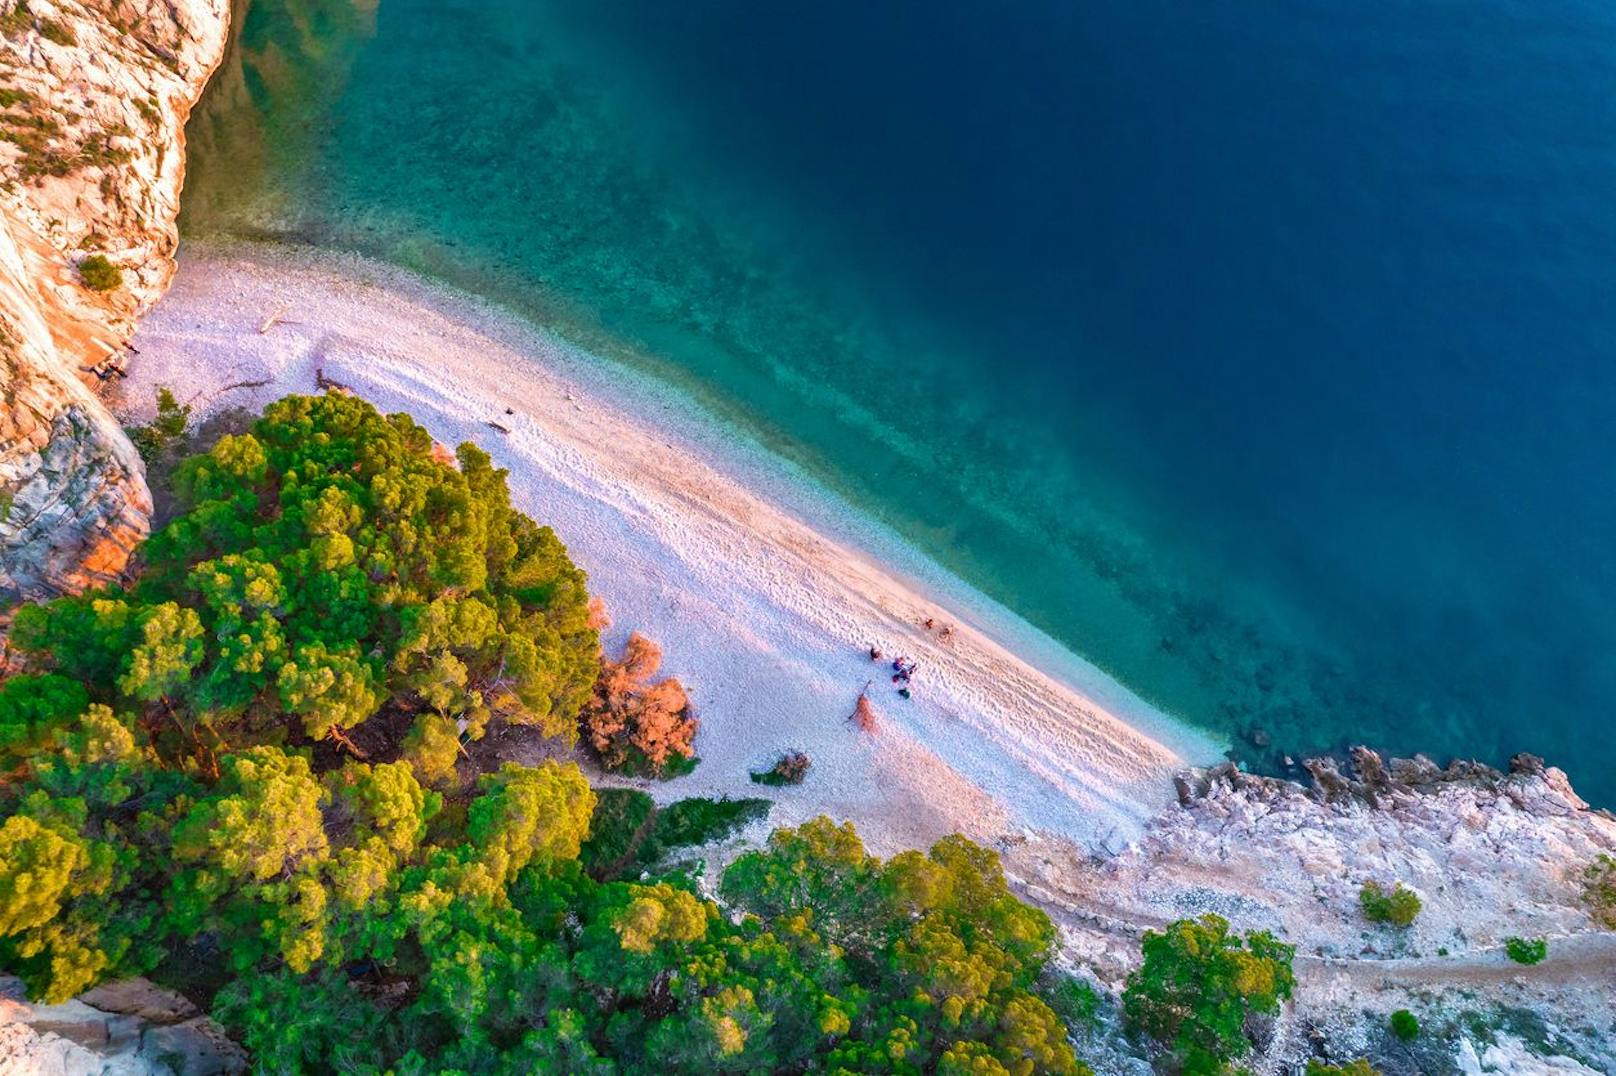 <strong>Nugal Beach nahe Makarska, Kroatien:</strong> Versteckt und ziemlich abgelegen liegt der Nugal Beach, in der Nähe der kroatischen Stadt Makarska – gerade richtig für einen FKK-Badeort. Der weiße, feine Kieselstrand schmiegt sich entlang einer felsigen Küste neben einem Waldgebiet und liegt direkt vor der blau glitzernden Adria. Die versteckte Bucht erreichst du am besten nach einem halbstündigen Spaziergang durch den Waldpark Osejava. Alternativ reist du per Boot zum Traumstrand. Wichtig zu wissen: Eine Strandbar suchst du hier vergeblich.&nbsp;